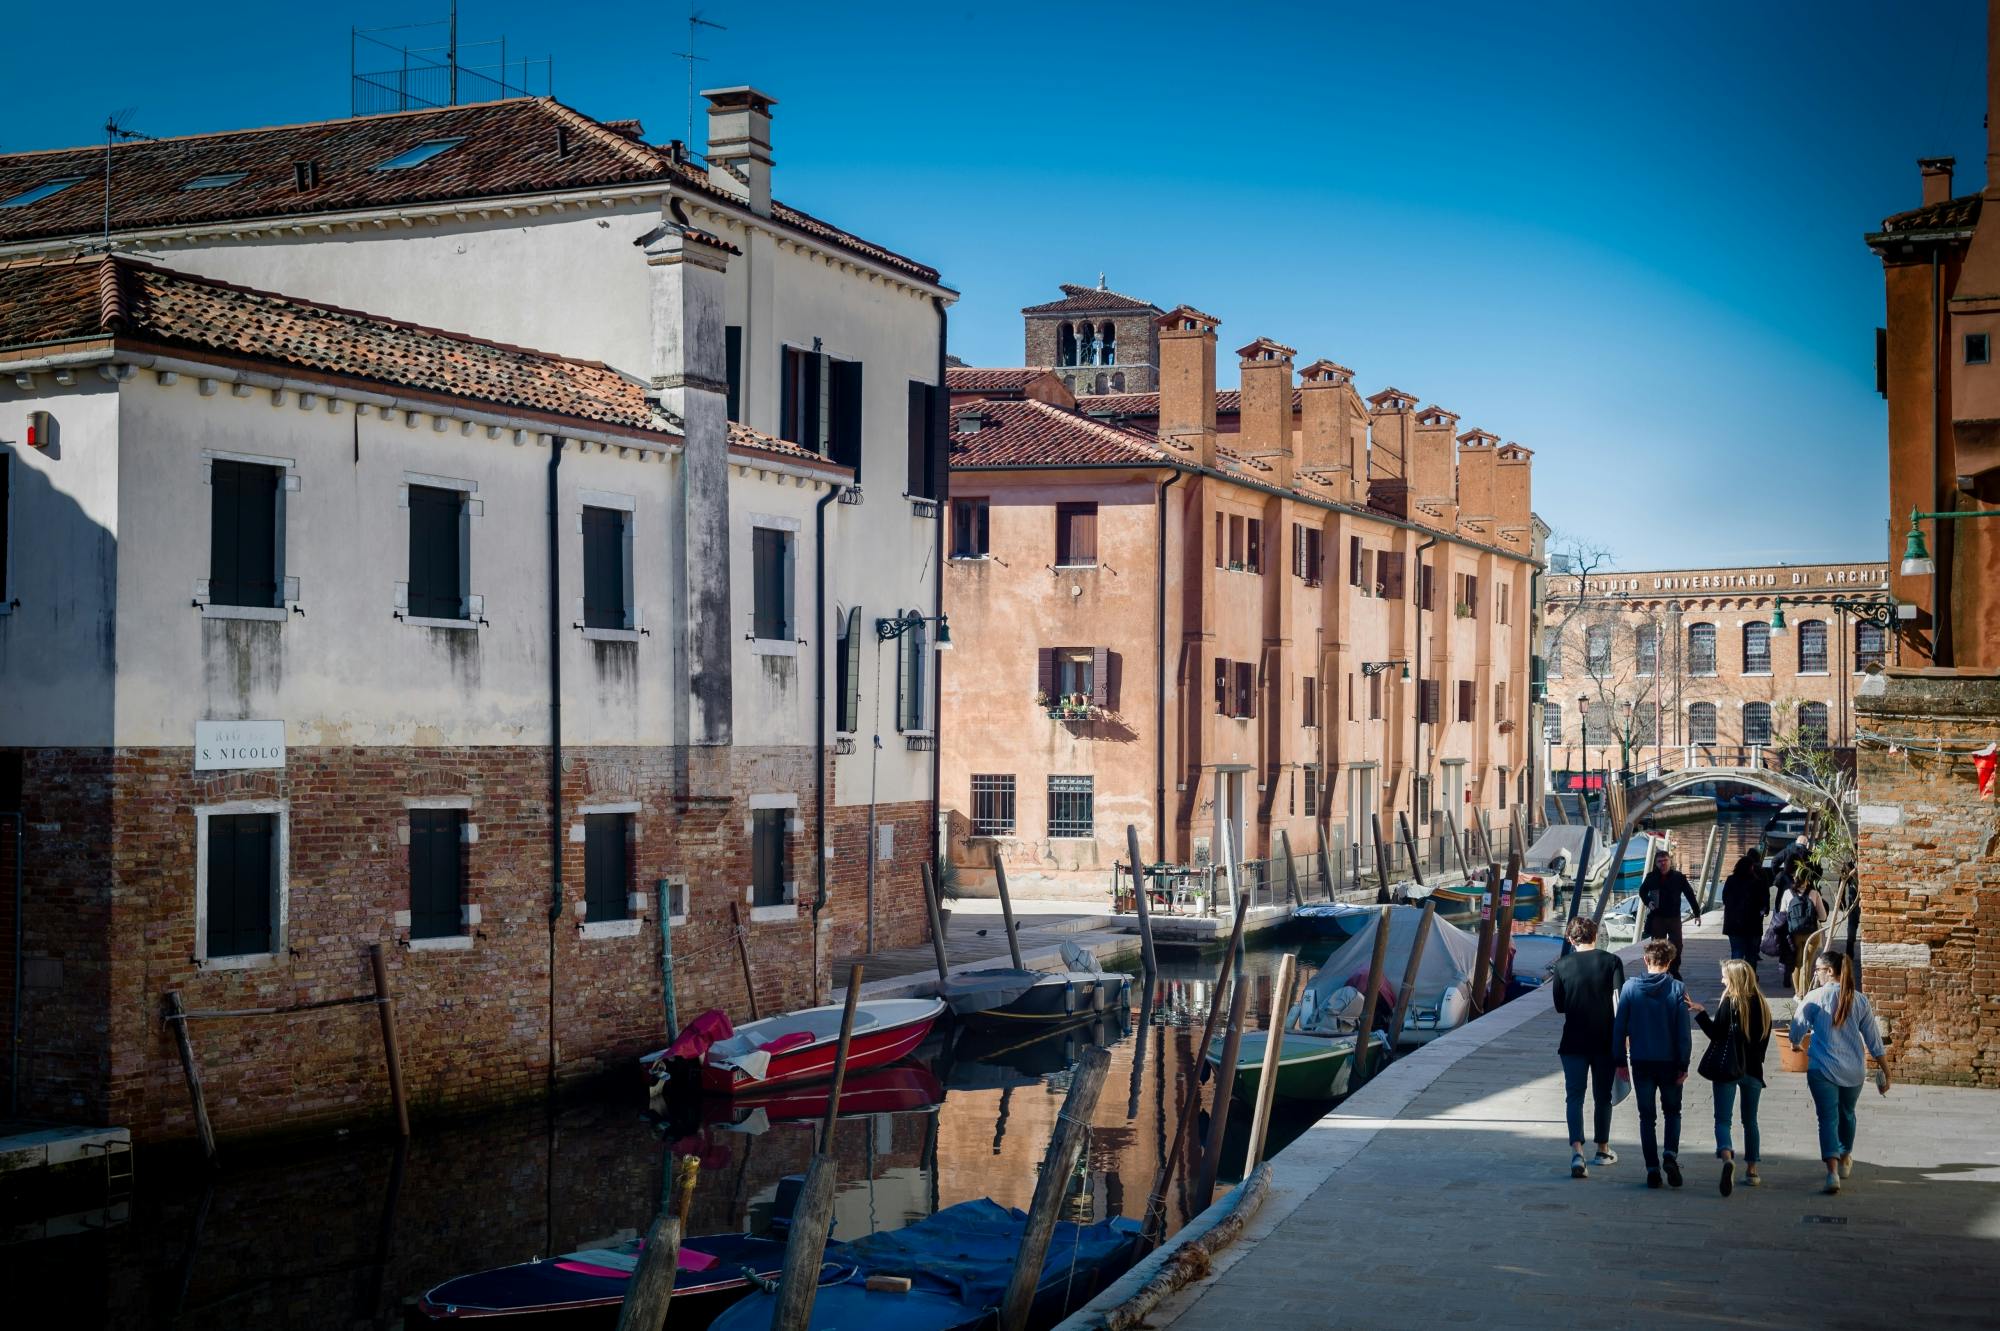 Fototour durch Venedig mit einem professionellen Fotografen